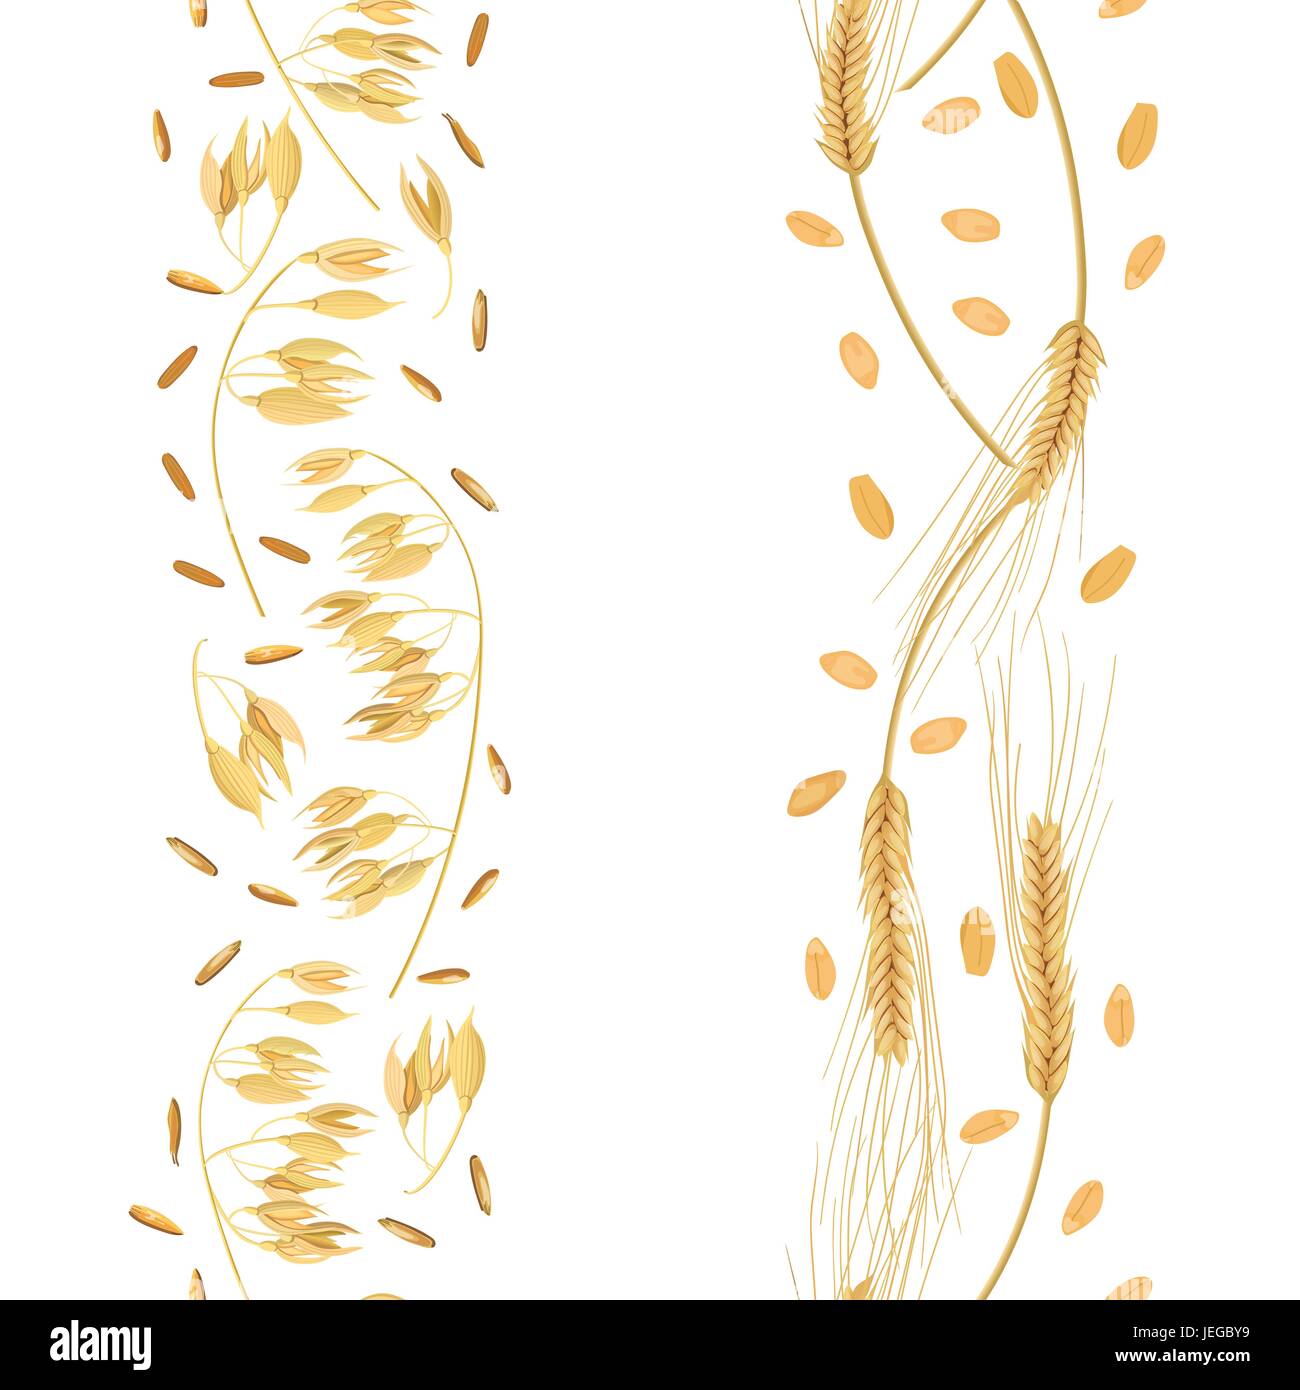 Streifen von Weizen und Hafer Ohren mit Körner Musterdesign. Goldenen Spitzen. Garbe Stock Vektor